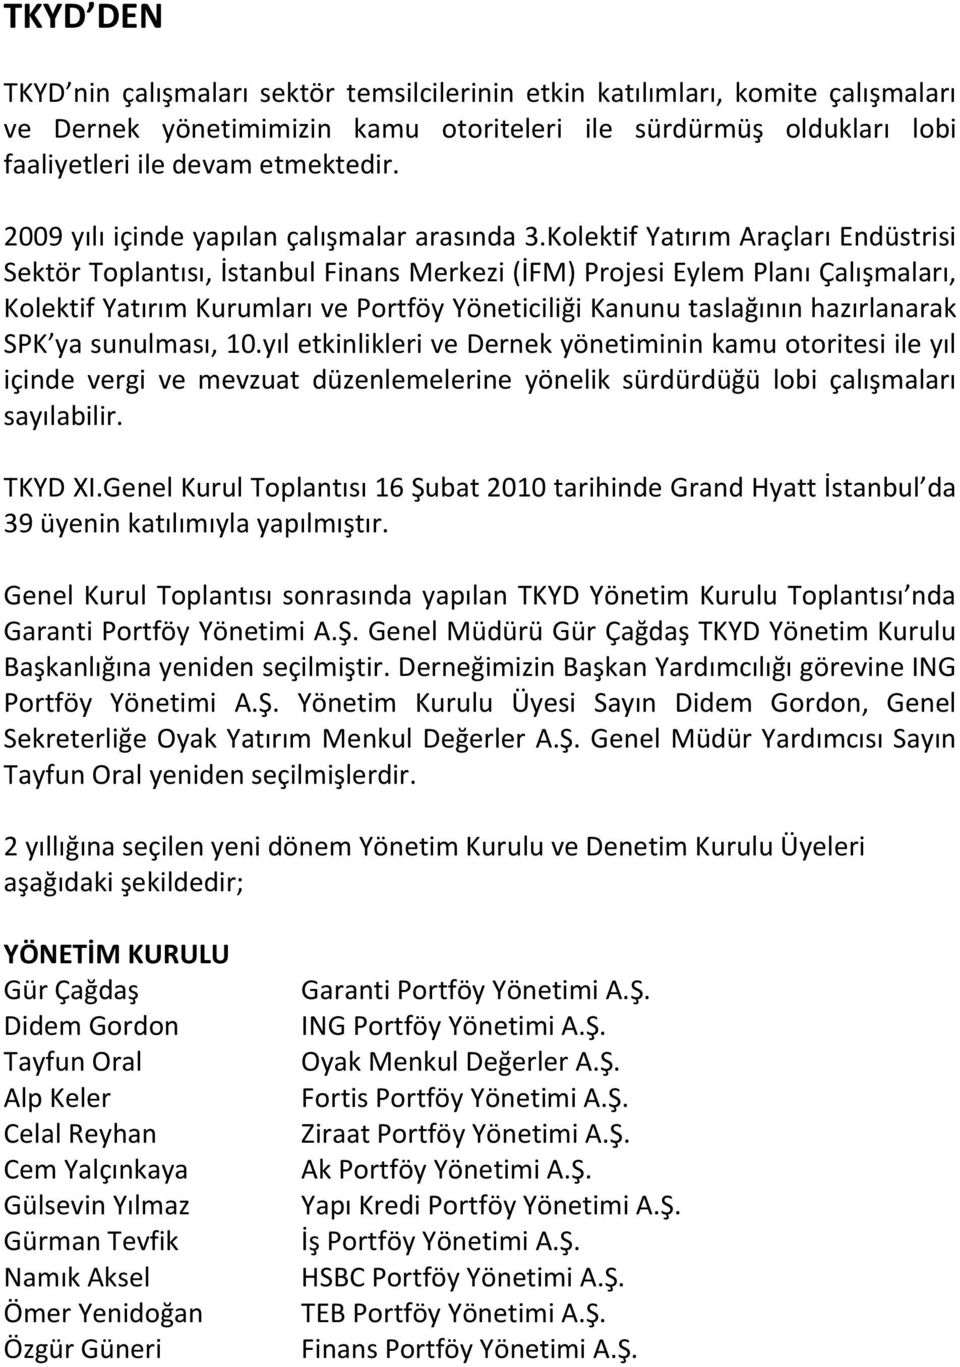 Kolektif Yatırım Araçları Endüstrisi Sektör Toplantısı, İstanbul Finans Merkezi (İFM) Projesi Eylem Planı Çalışmaları, Kolektif Yatırım Kurumları ve Portföy Yöneticiliği Kanunu taslağının